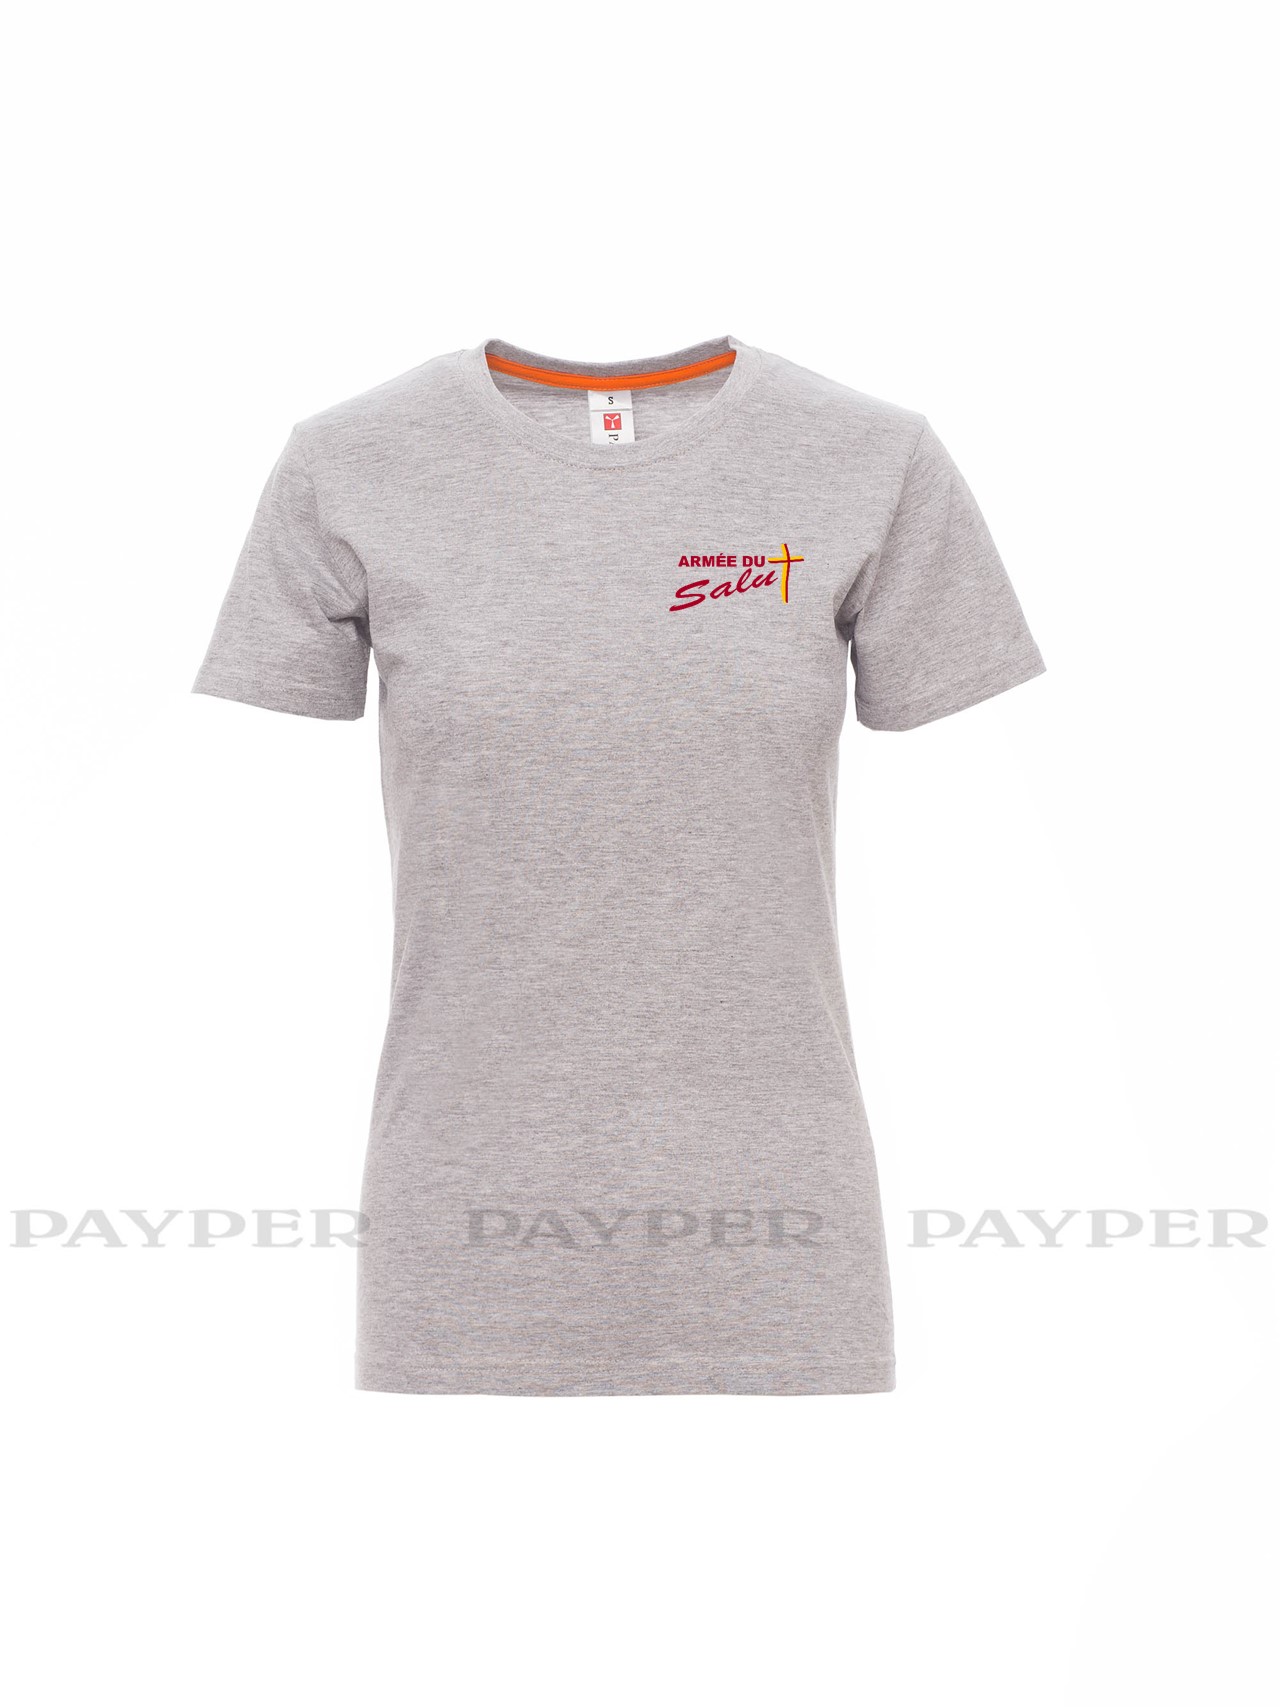 T-shirt femme gris chiné avec logo serigraphié